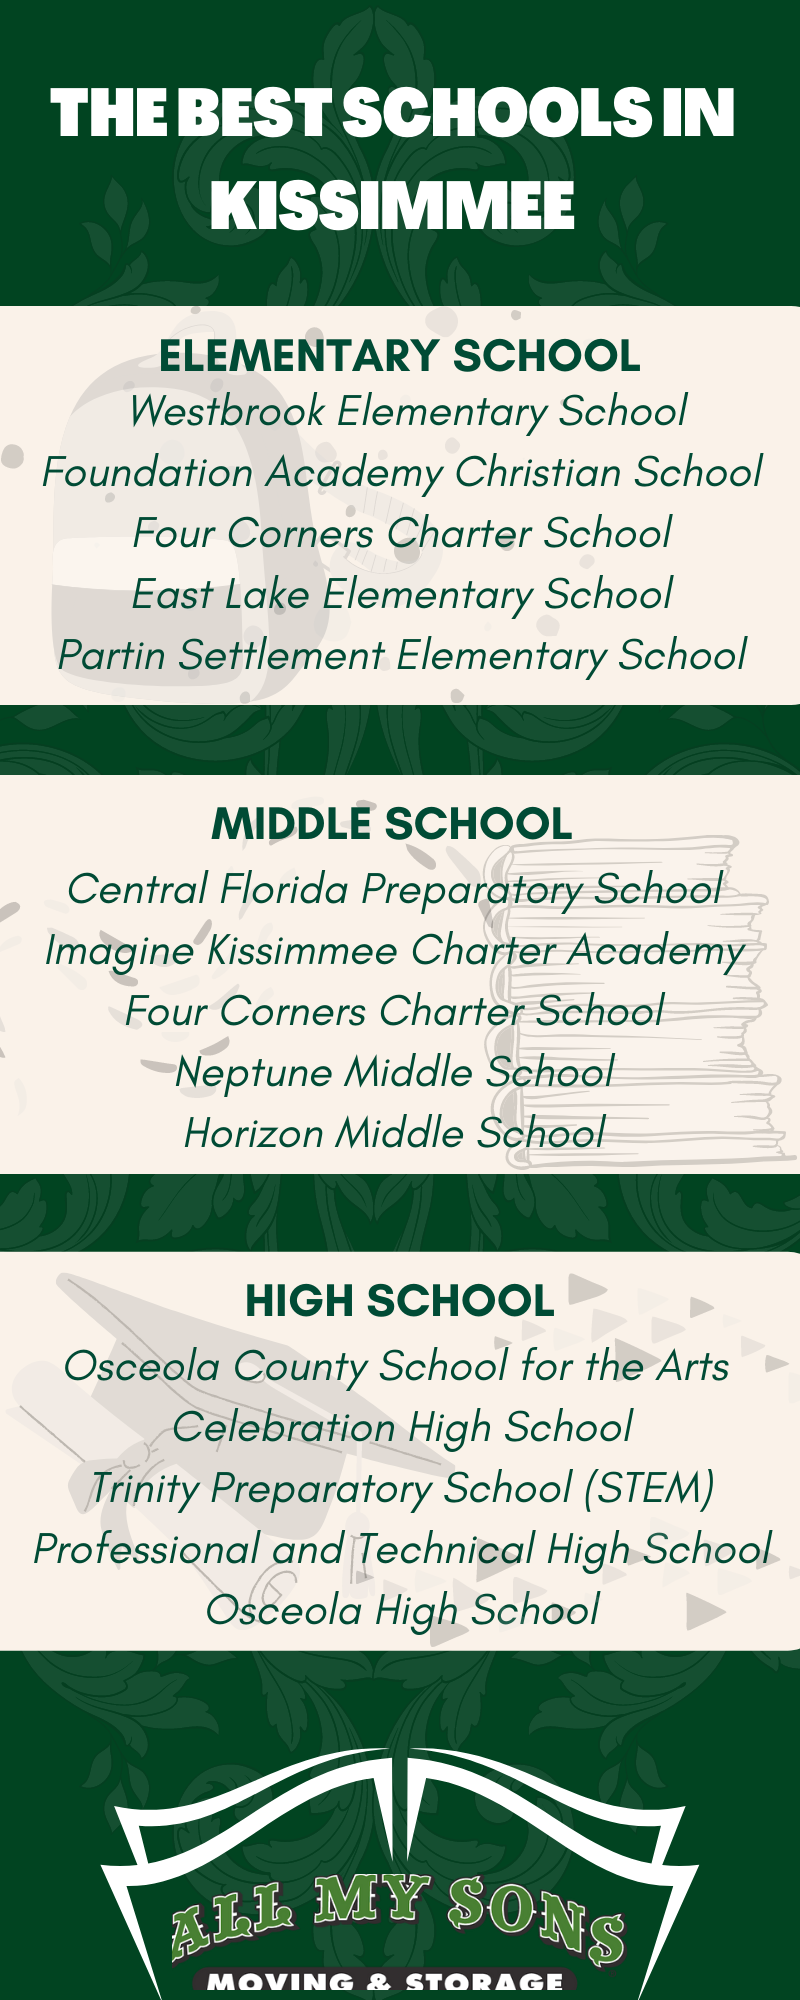 Best Schools in Kissimmmee Infographic